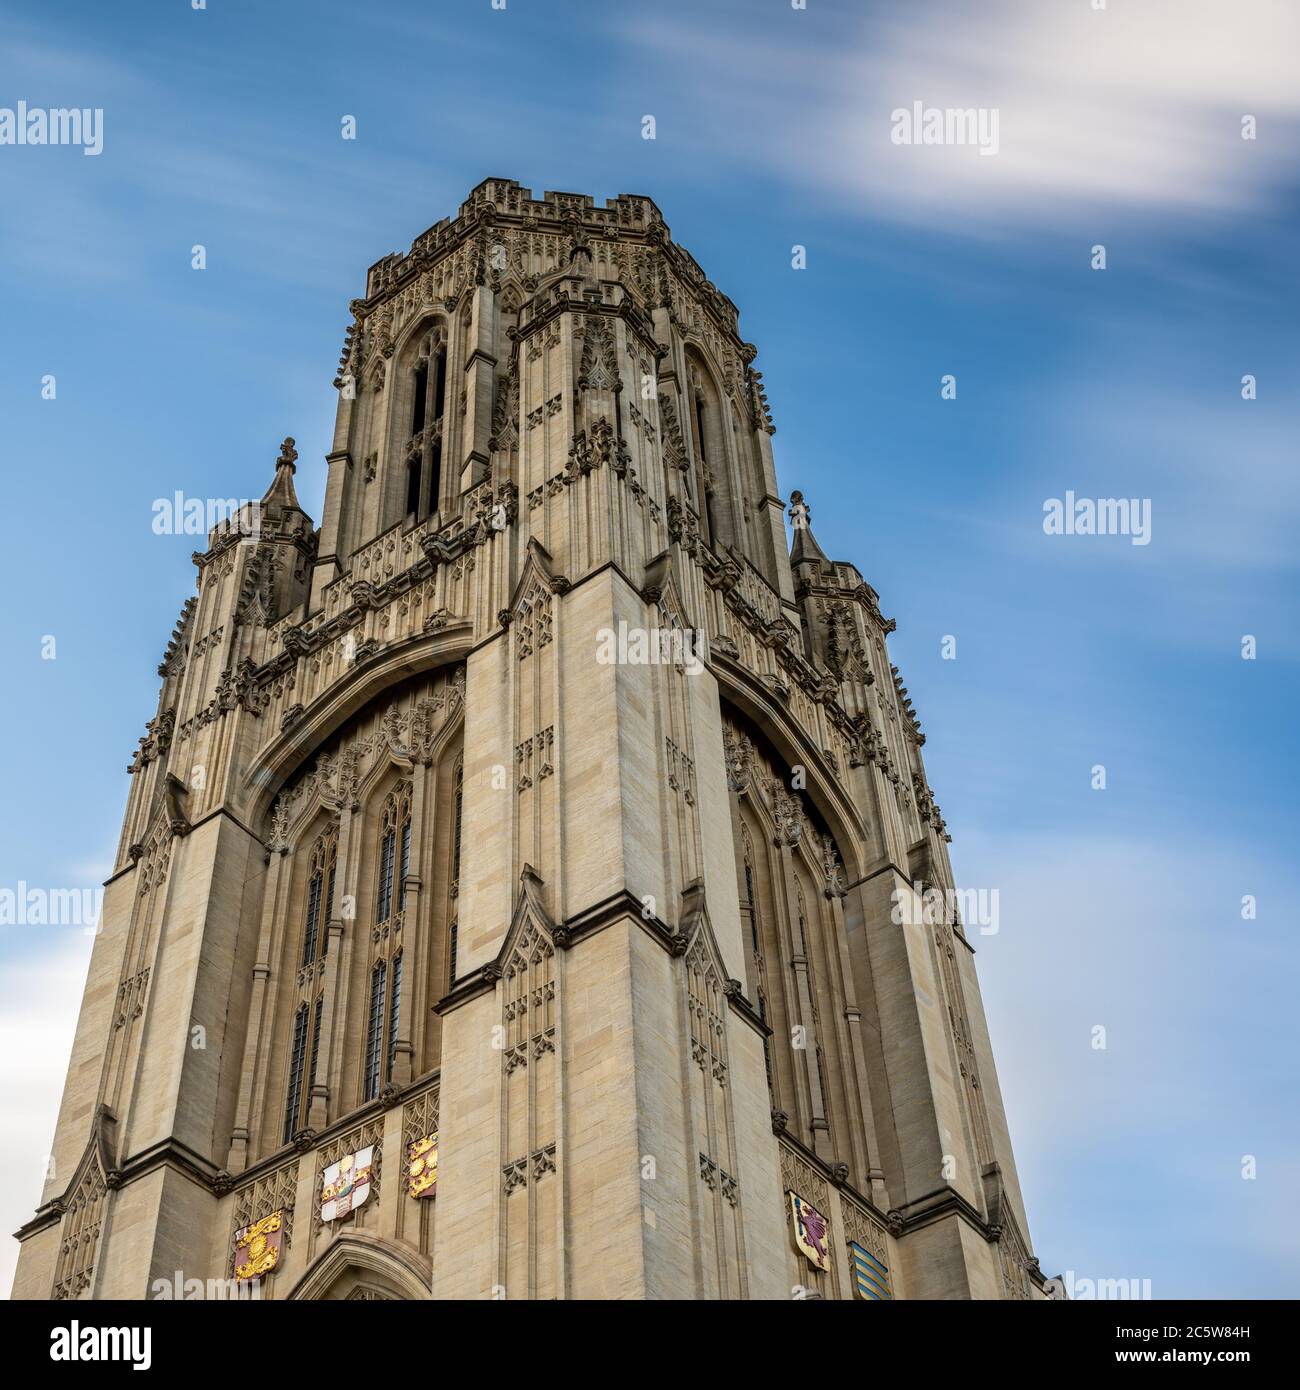 Le nuvole scivolano attraverso un cielo blu sopra il simbolo del revival gotico Wills Memorial Building presso l'Università di Bristol. Foto Stock